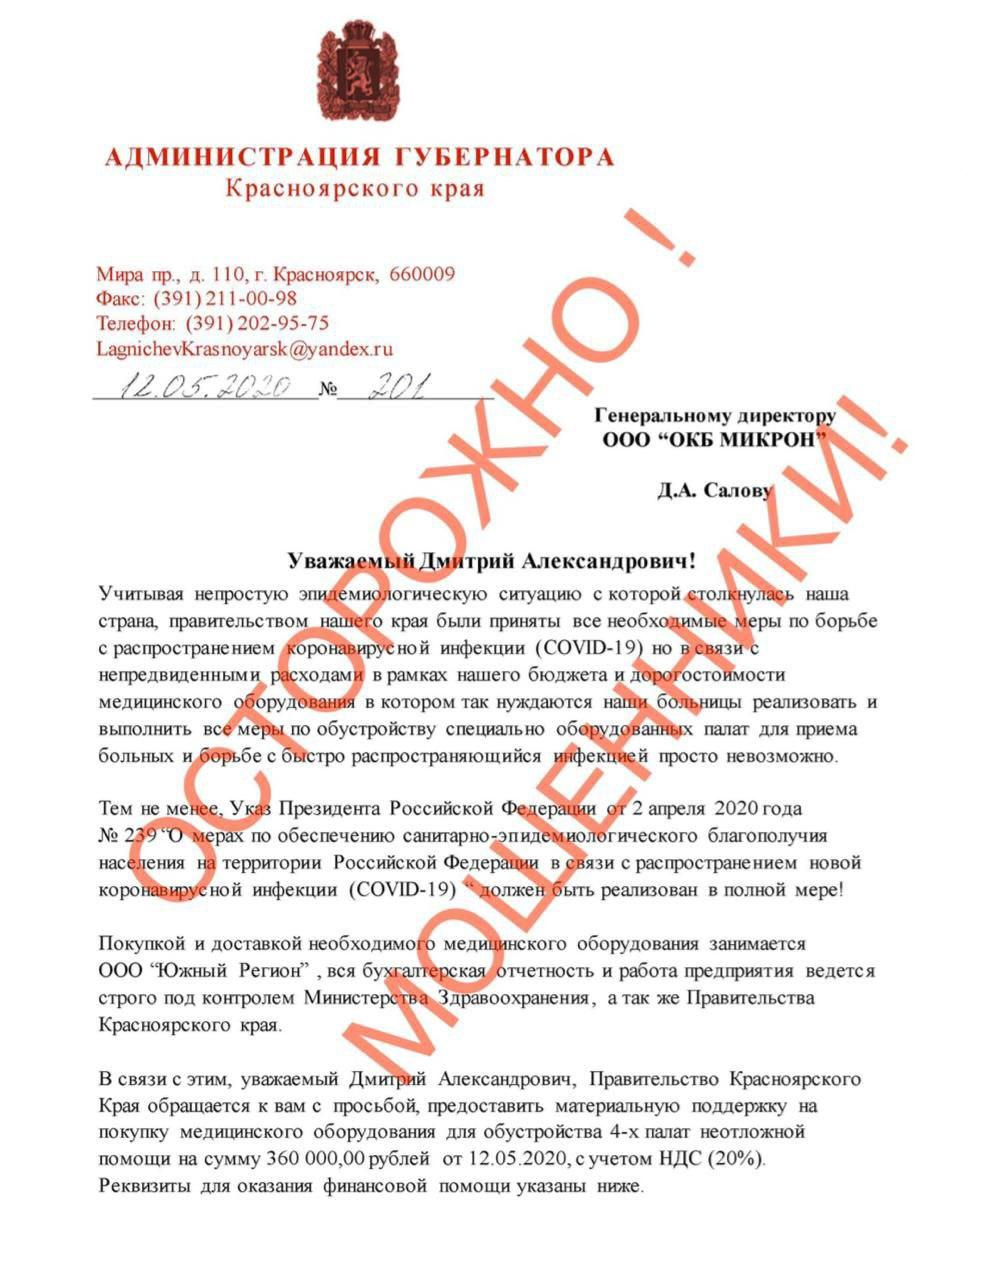 В этом письме просят помочь купить медицинское оборудование для четырех палат неотложной помощи на сумму 360 тысяч рублей